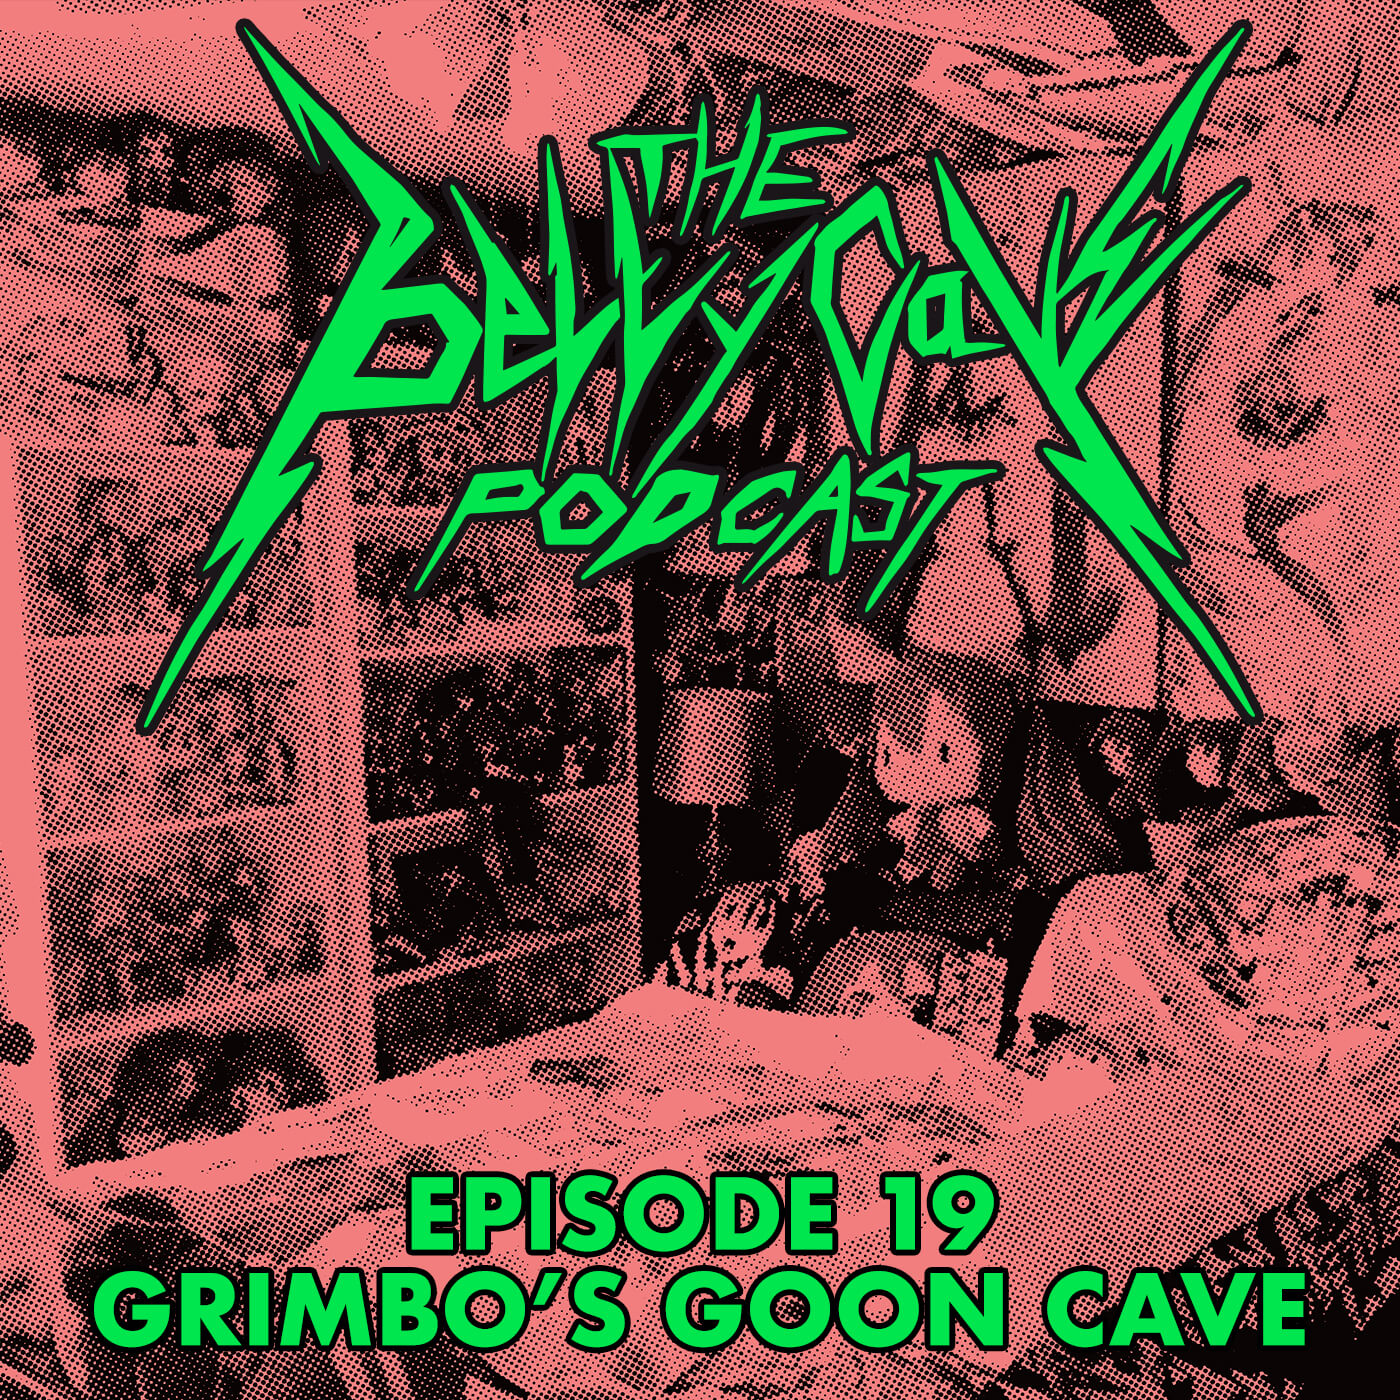 Episode 19: Grimbo’s Goon Cave - Jims Urbex Adelaide